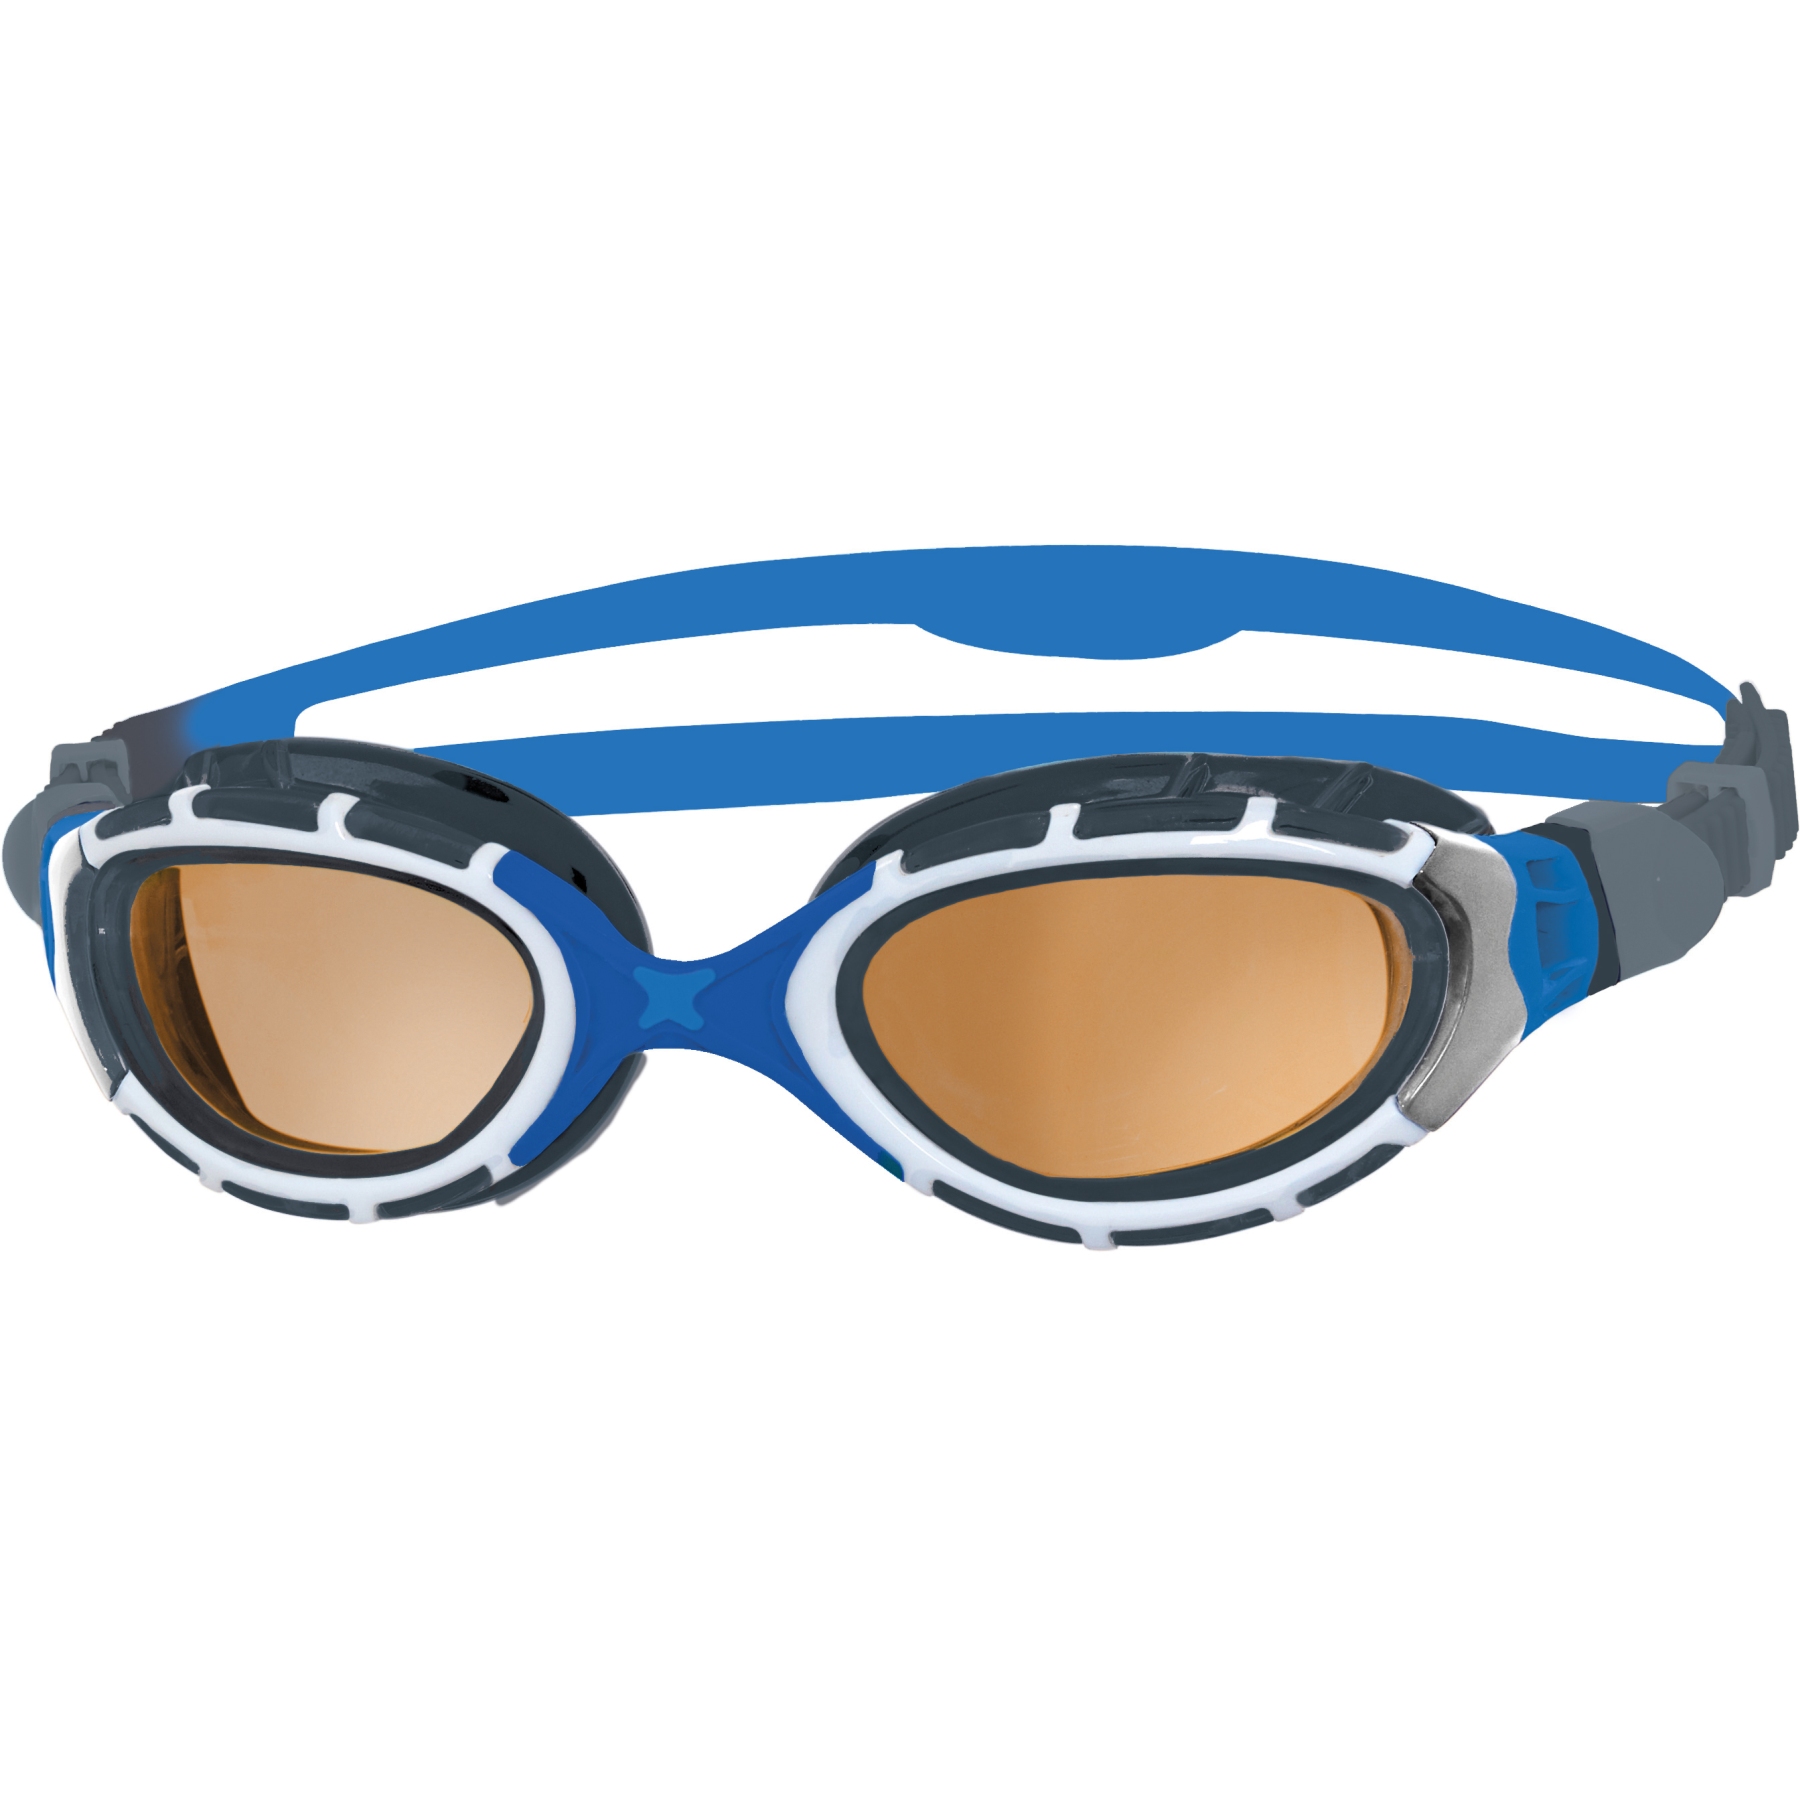 Picture of Zoggs Predator Flex Swimming Goggles - Polarized Ultra Copper Lenses - Small Fit - Blue/Grey